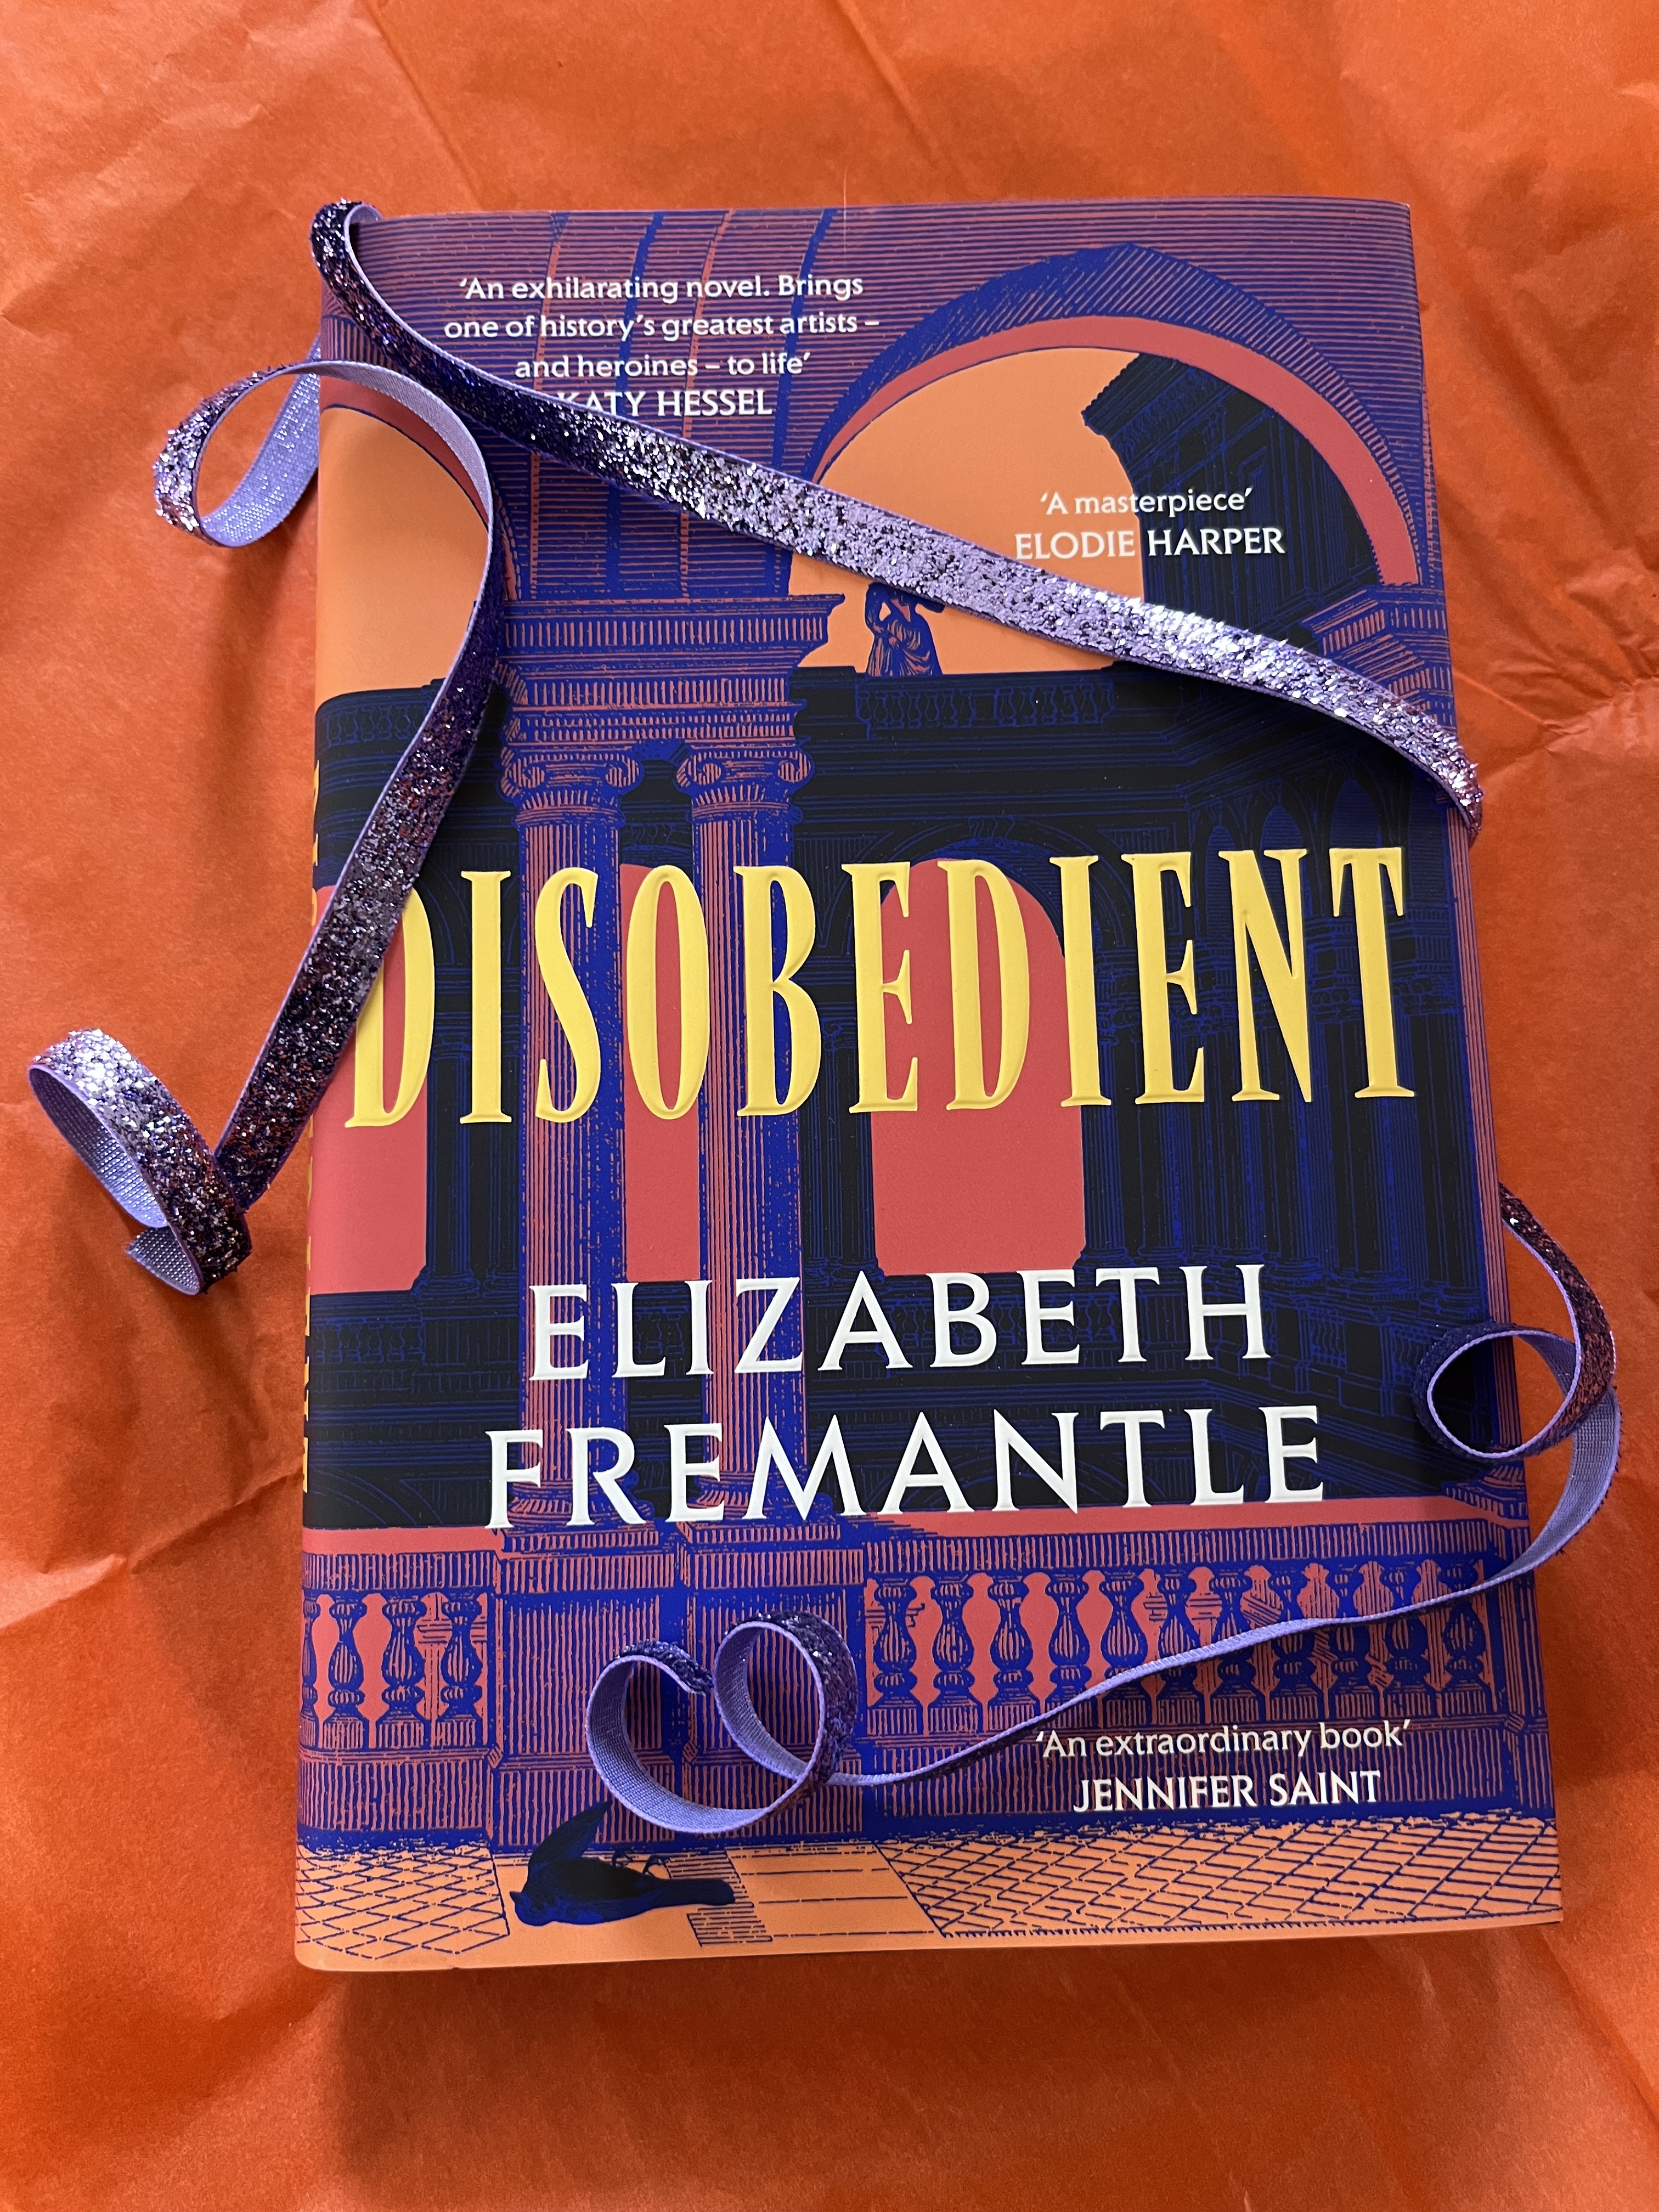 Queen's Gambit by Elizabeth Fremantle: Book review